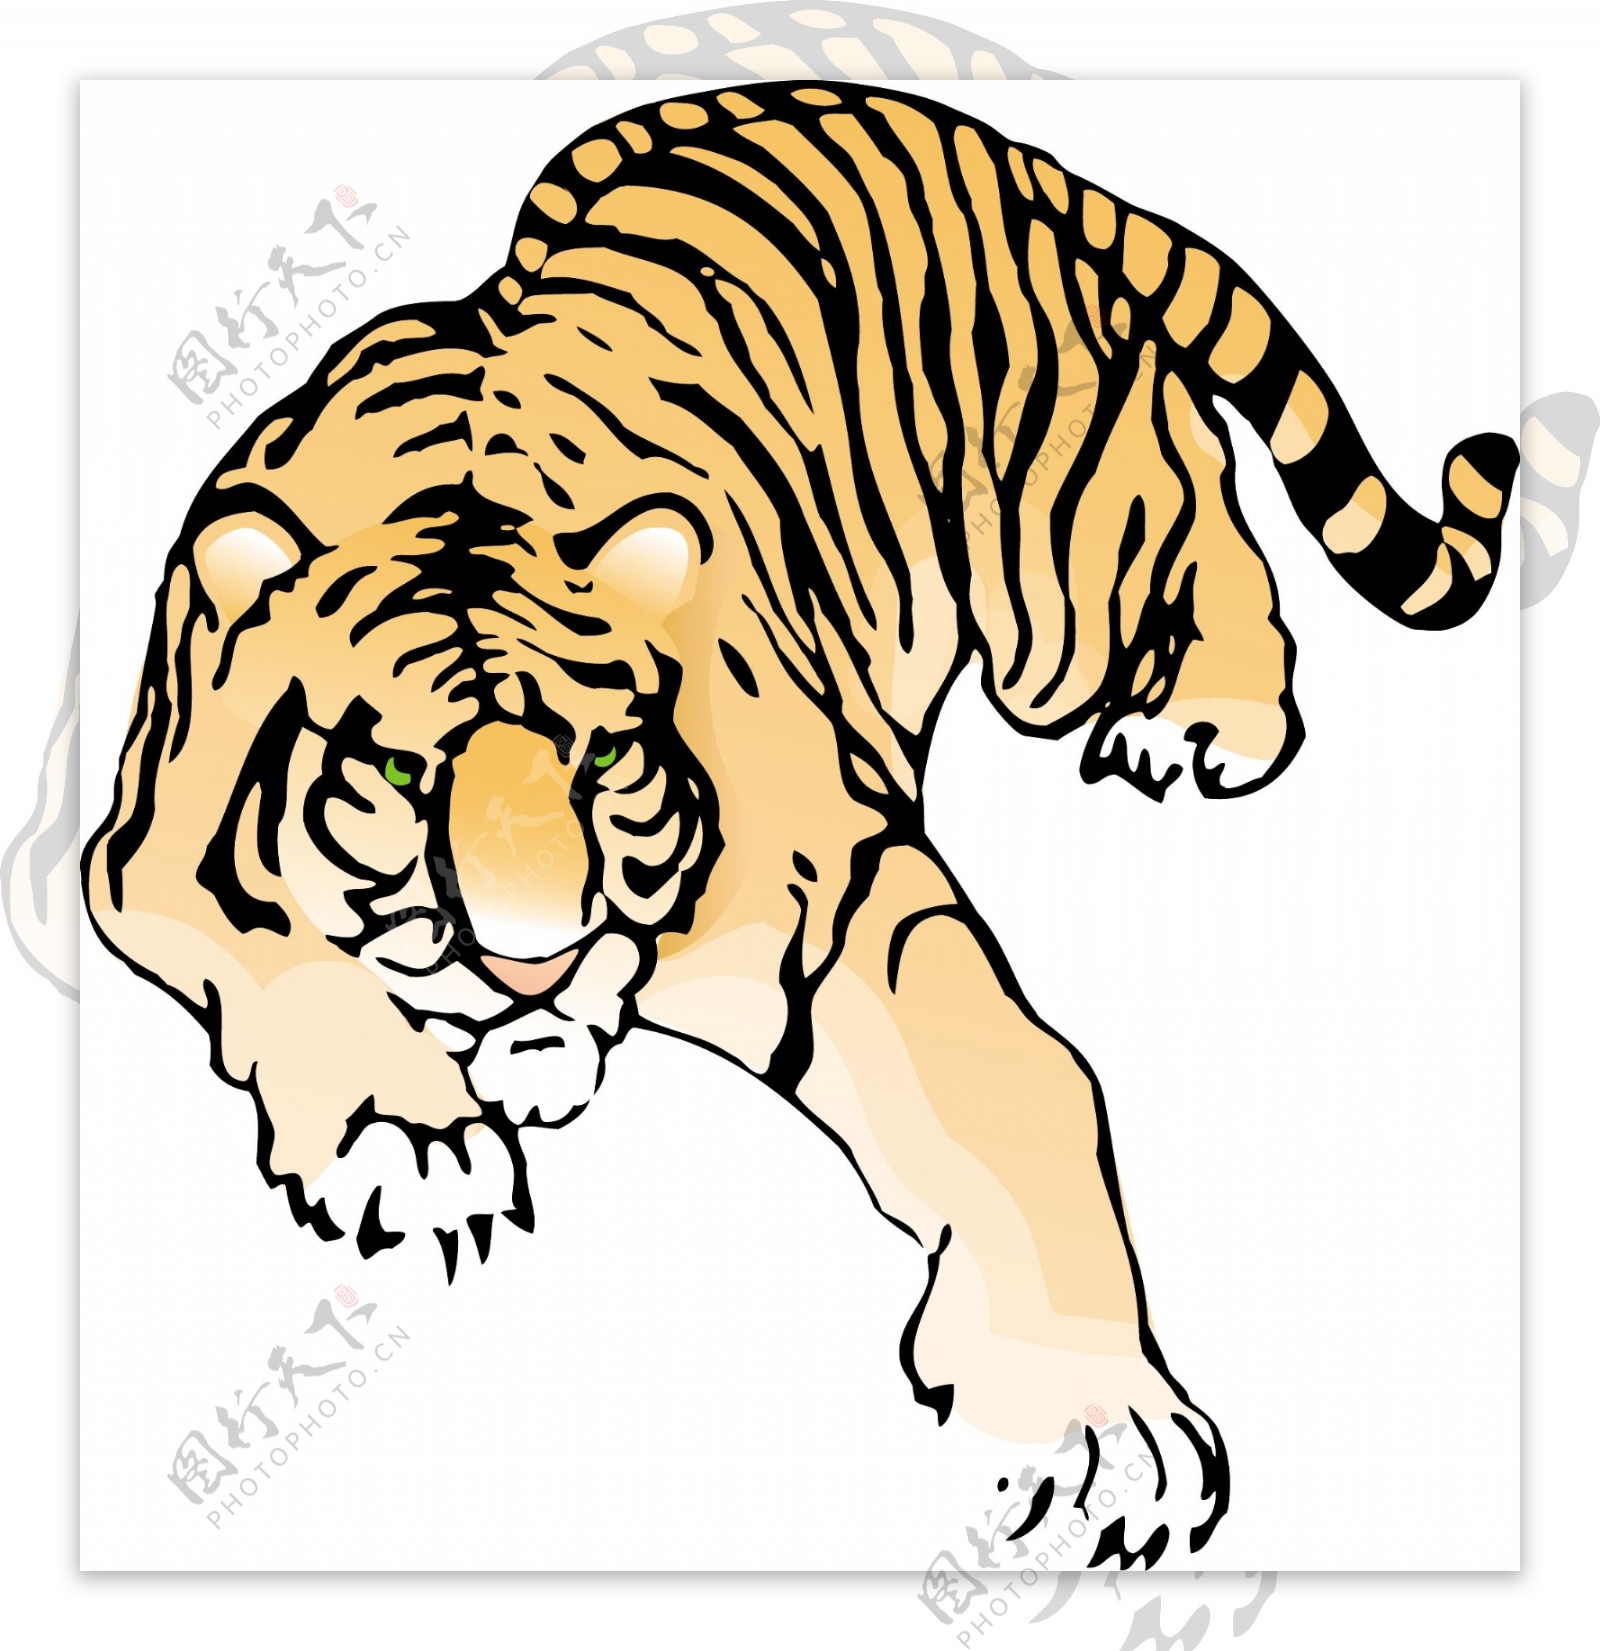 一只趴着的老虎手绘矢量素材